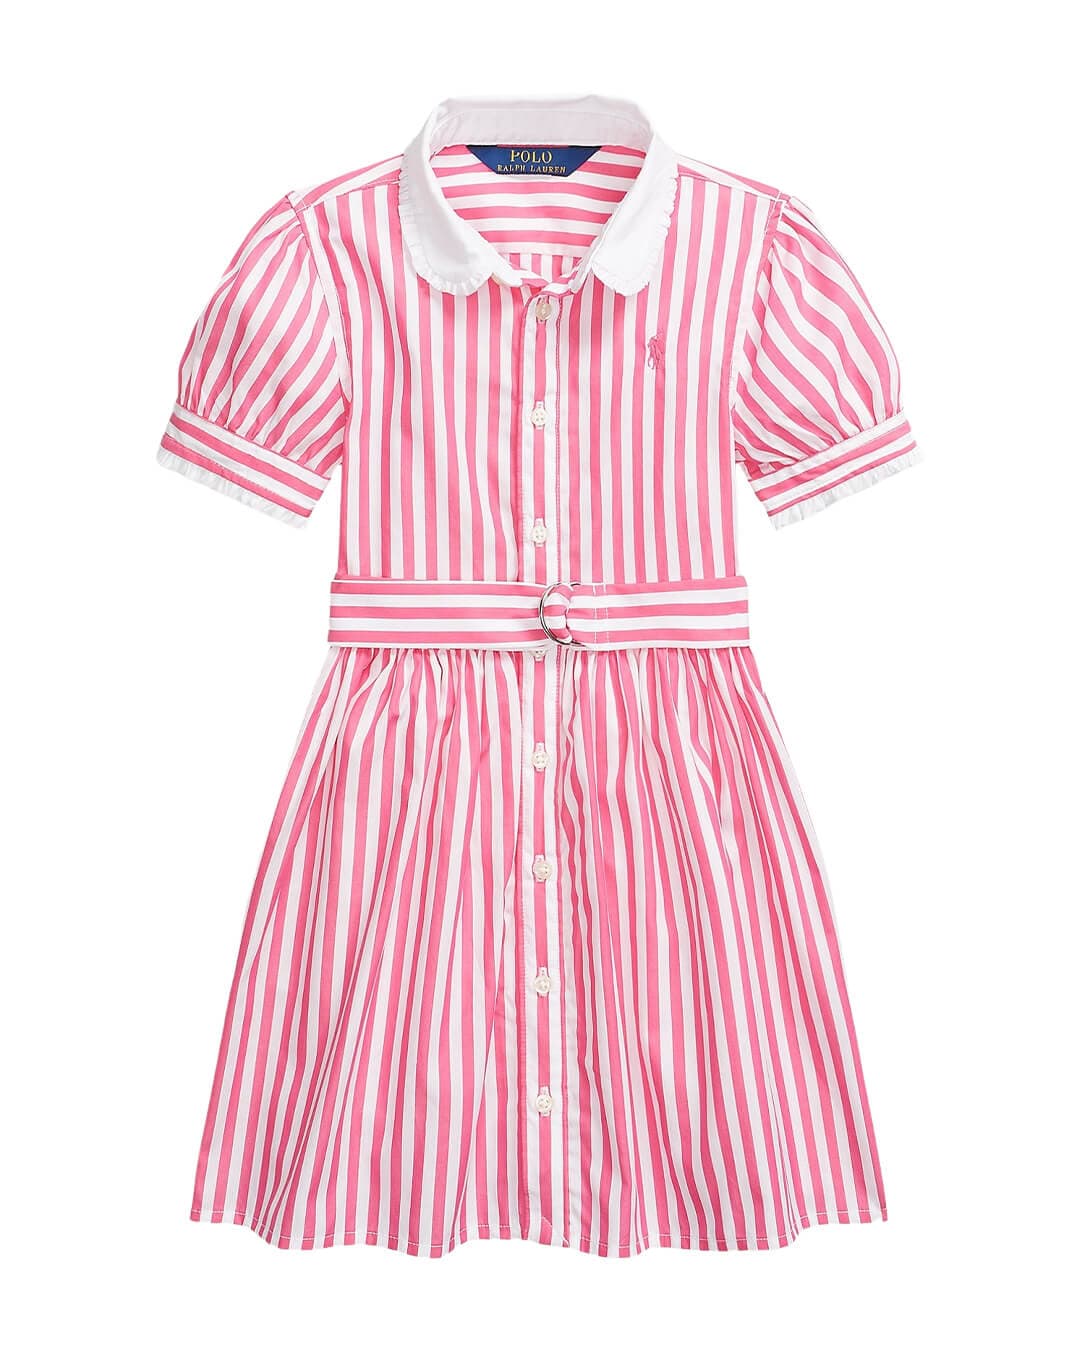 Polo Ralph Lauren Dresses Girls Polo Ralph Lauren Belted Striped Mix Cotton Poplin Shirt Dress